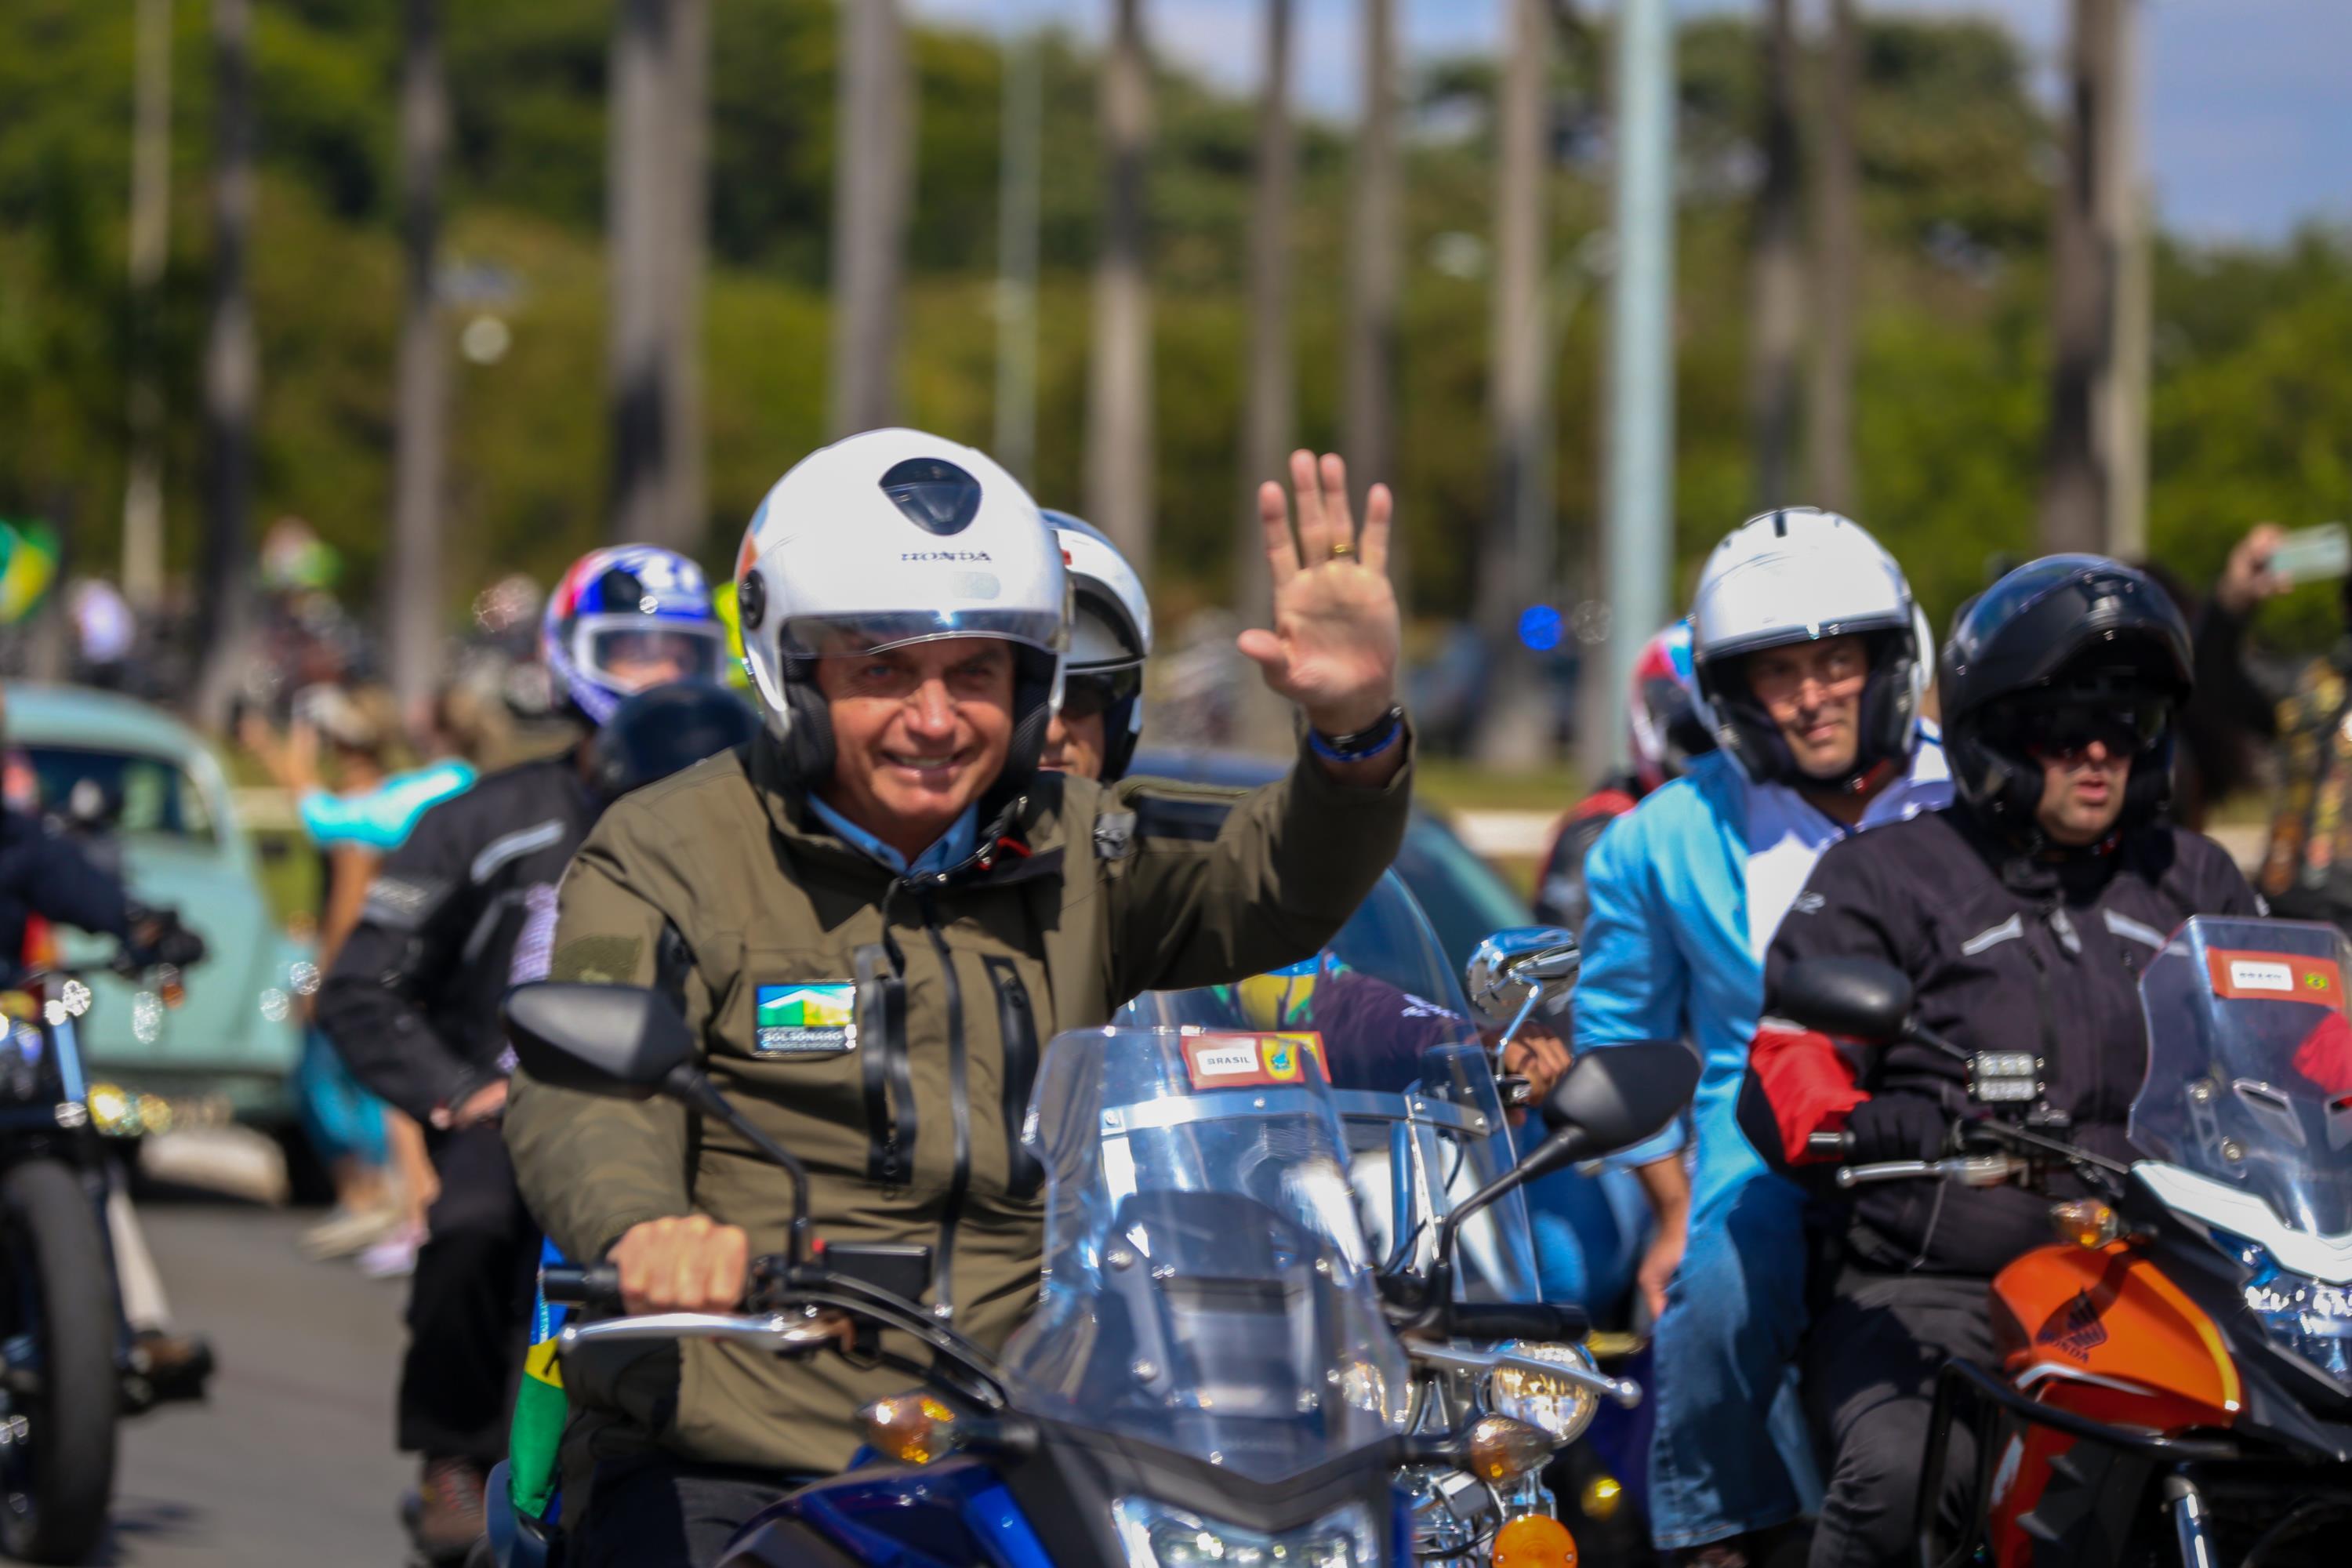 Candidato à reeleição, Bolsonaro usou muitos compromissos fora de Brasília para fazer política, como no último dia 23 de maio, quando participou de um passeio no Rio